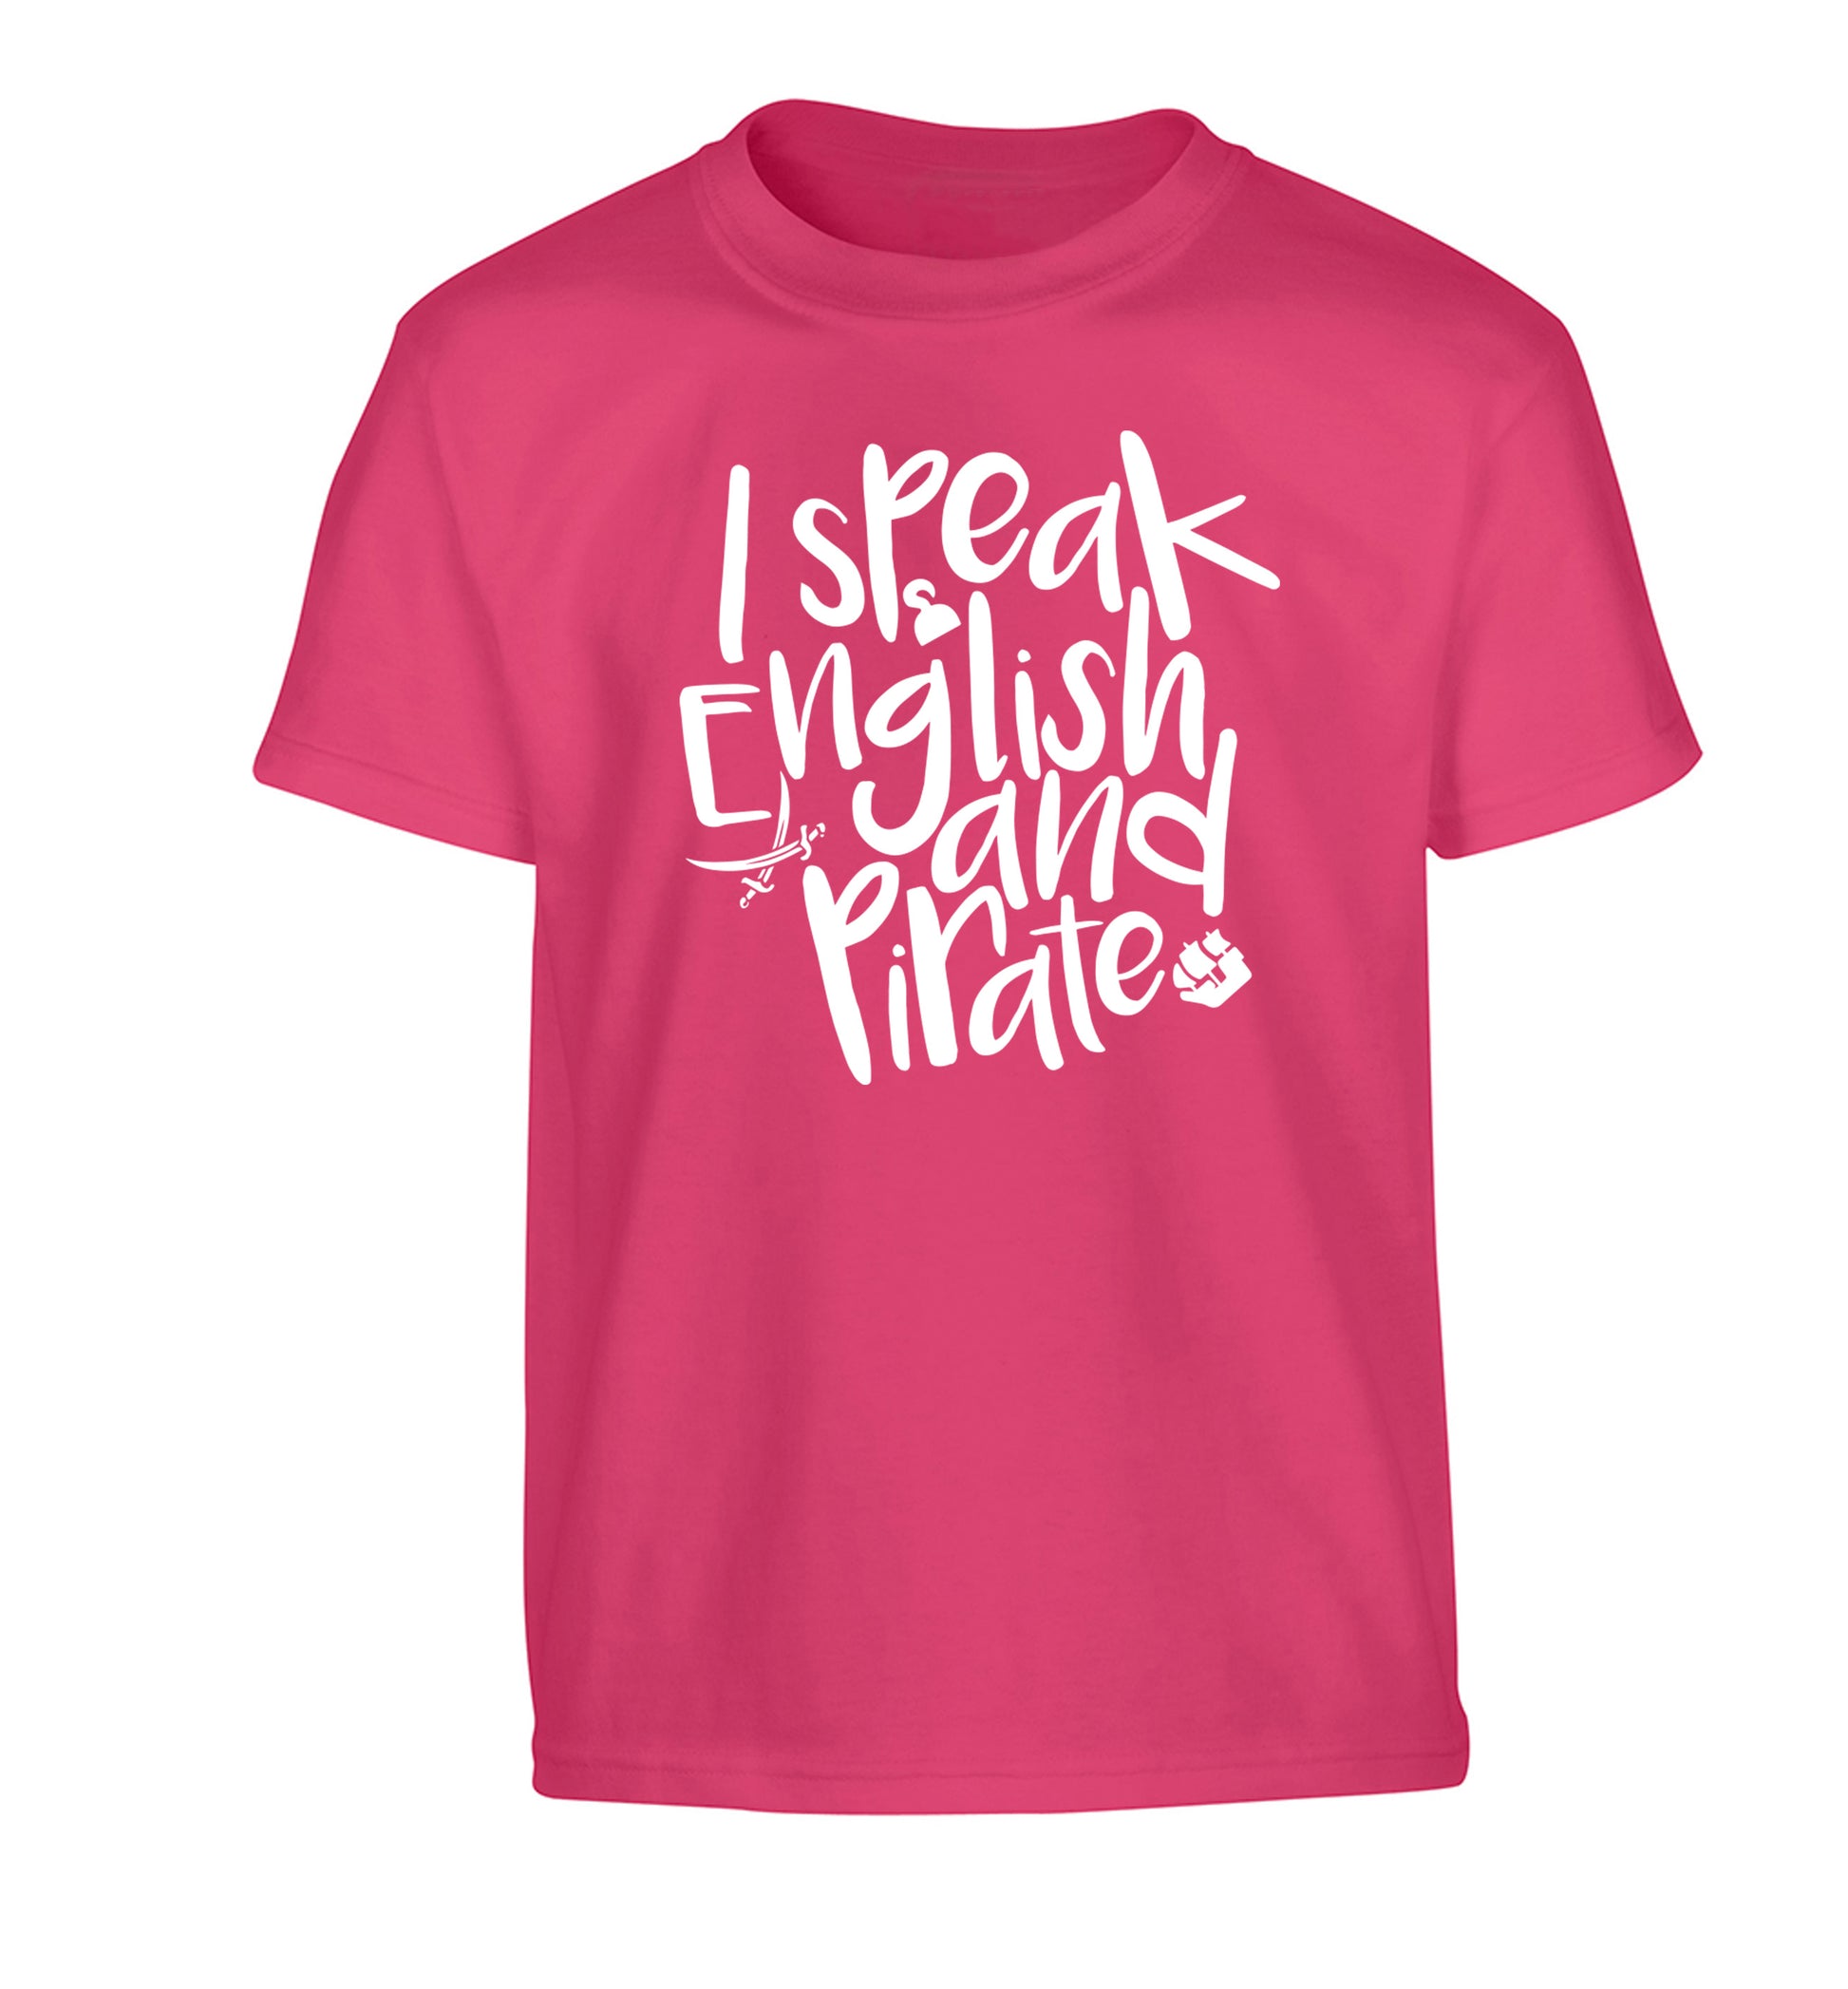 I speak English and pirate Children's pink Tshirt 12-13 Years